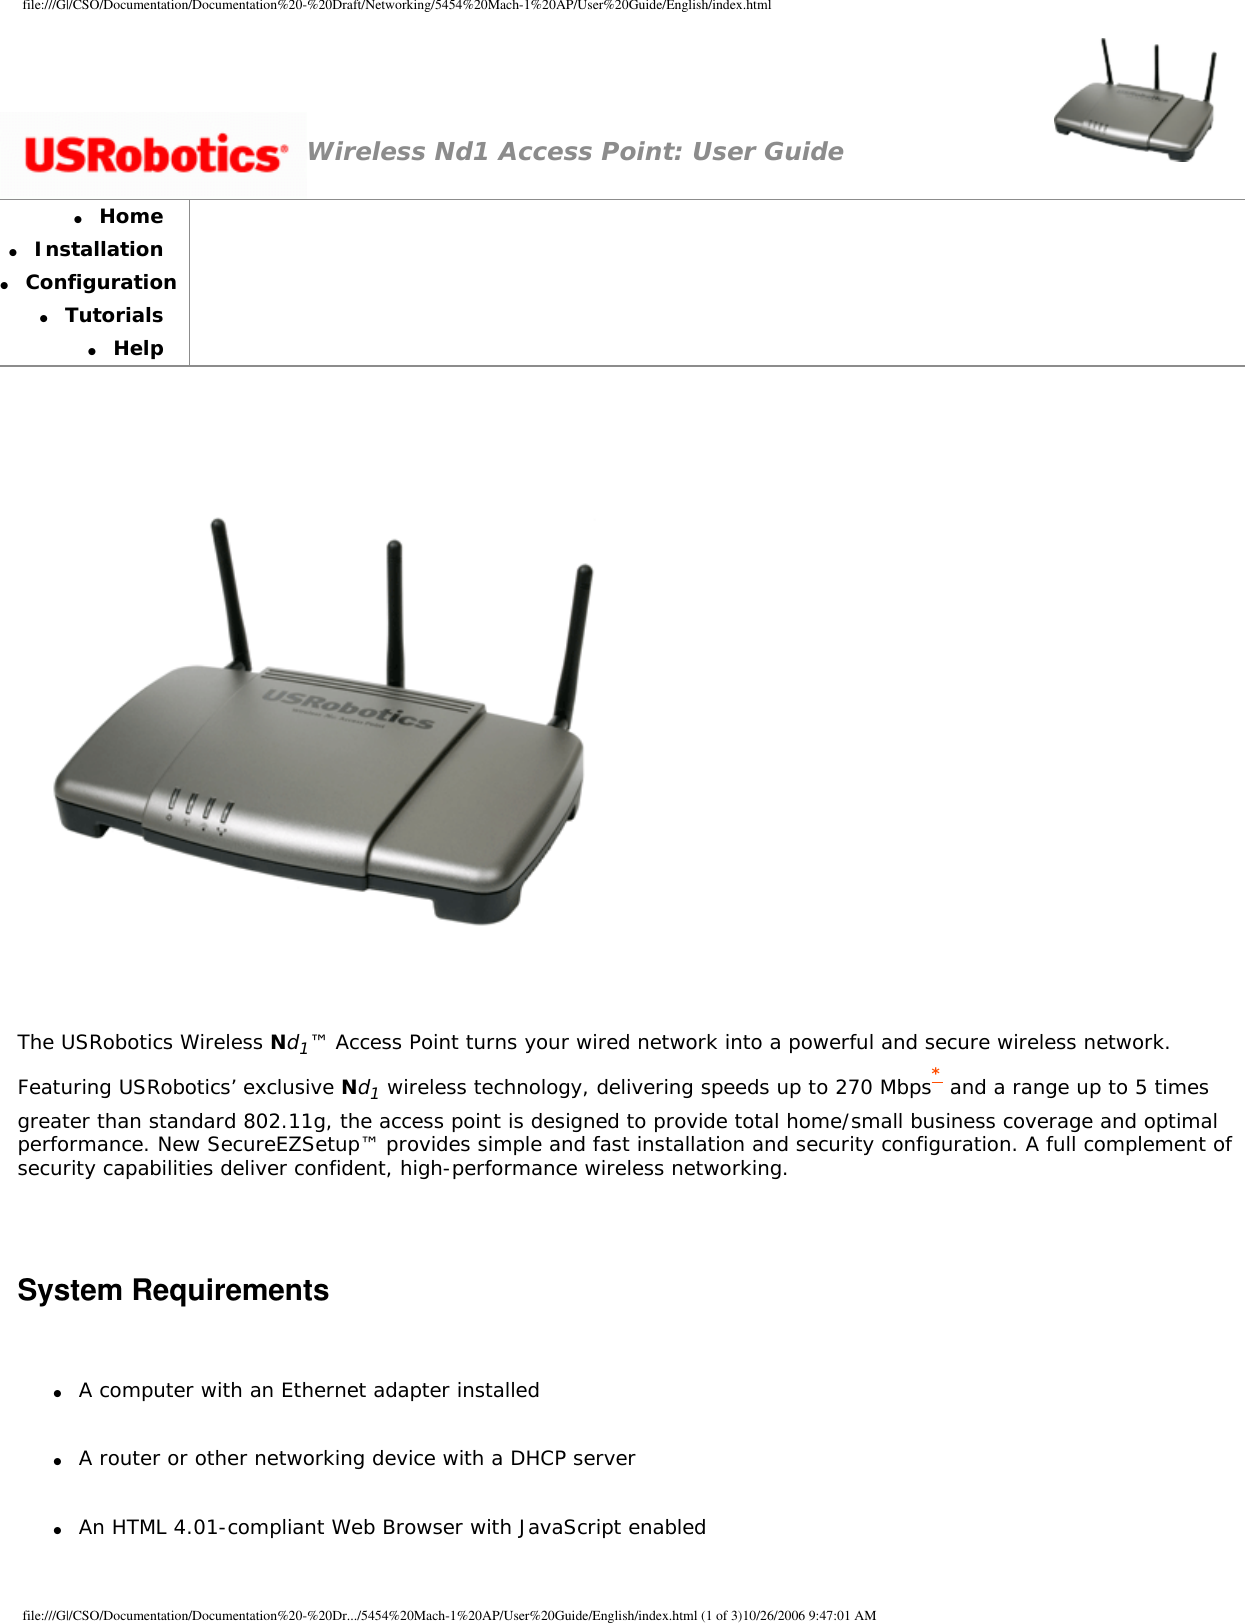 Page 1 of GemTek Technology A950630GN USRobotics Wireless Nd1 Access Point User Manual Manual